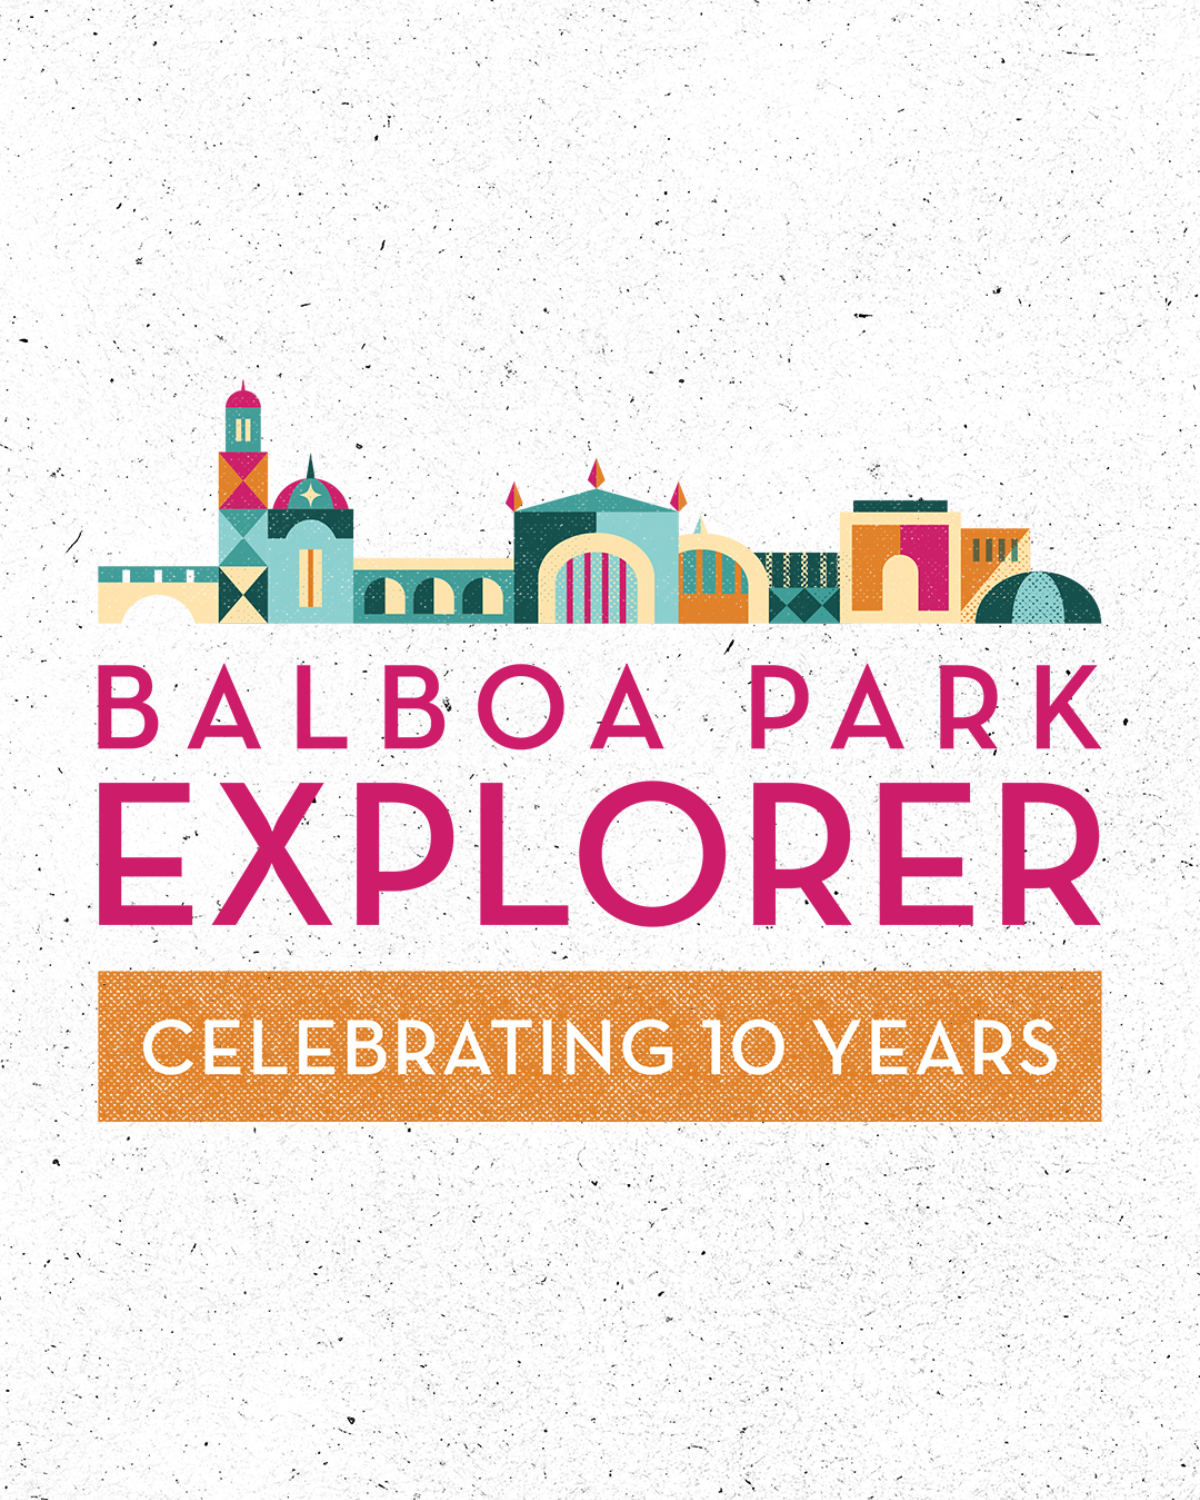 Balboa Park Explorer - Celebrating 10 Years